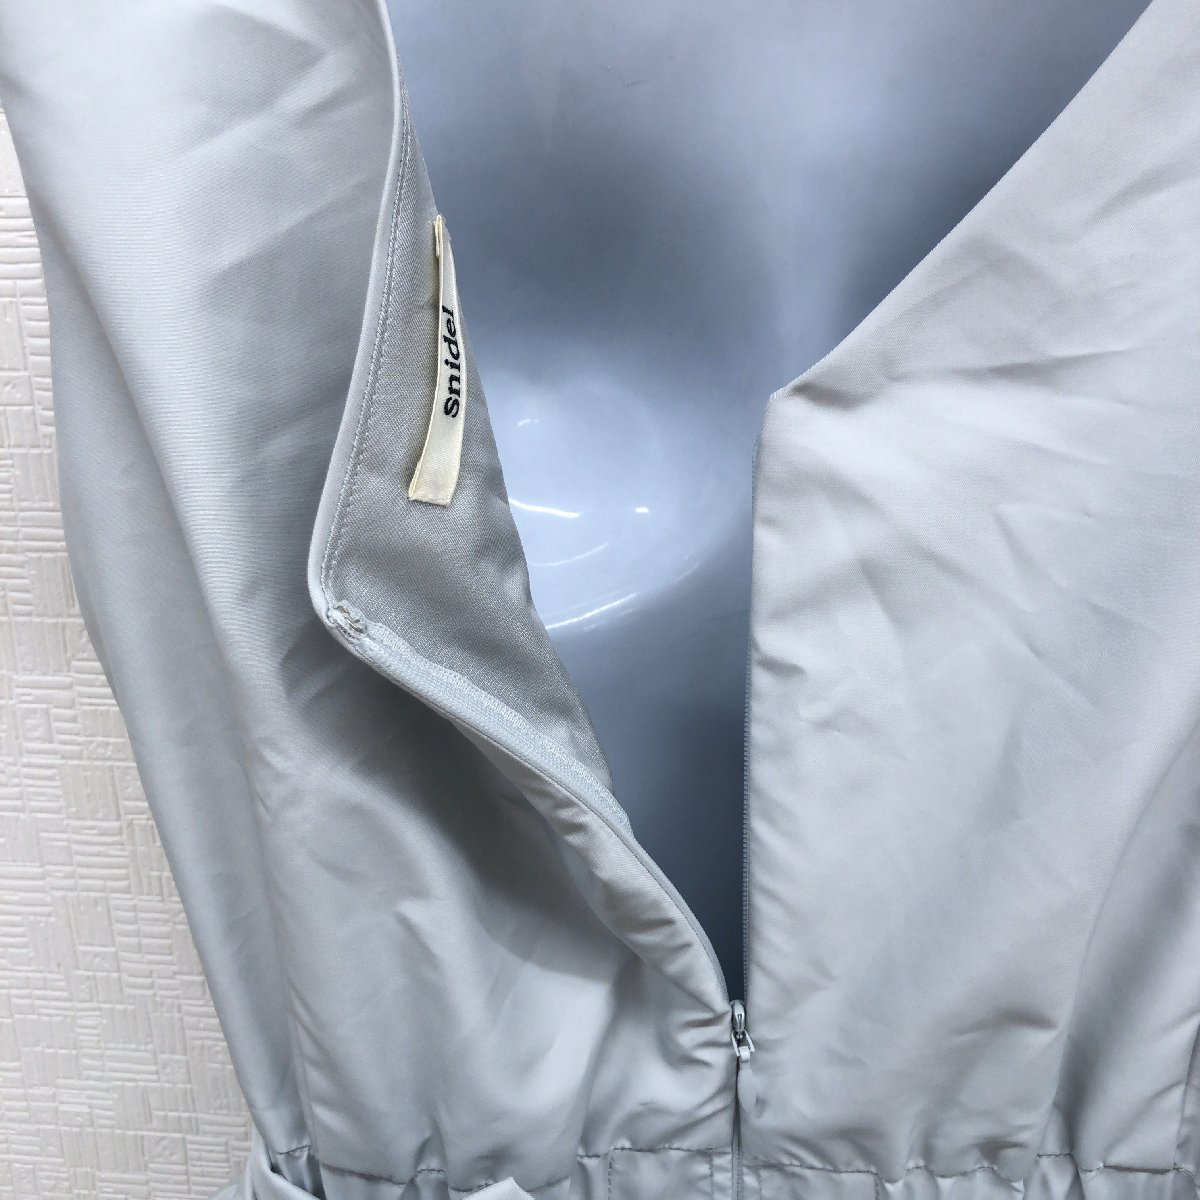 ●SNIDEL スナイデル リボン装飾 レイヤード ドレス ワンピース 1(M) ベビーブルー ノースリーブ ボリュームスカート 国内正規品 女性用_画像6